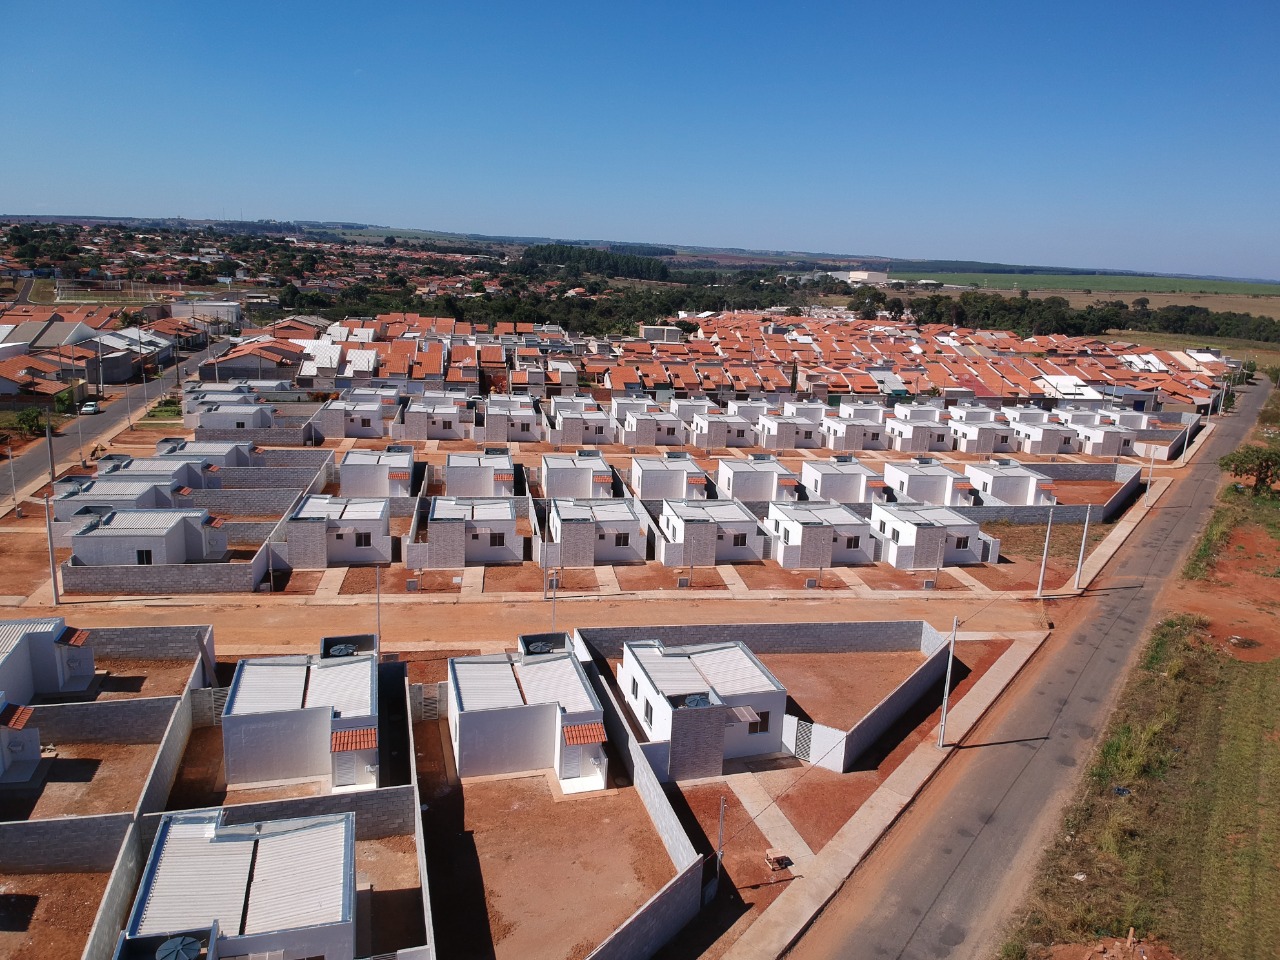  Agehab promove a política habitacional do Estado de Goiás. Processo seletivo busca arquitetos, engenheiros, advogados e assistentes social; salários variam de R$ 5 mil a R$ 11,2 mil